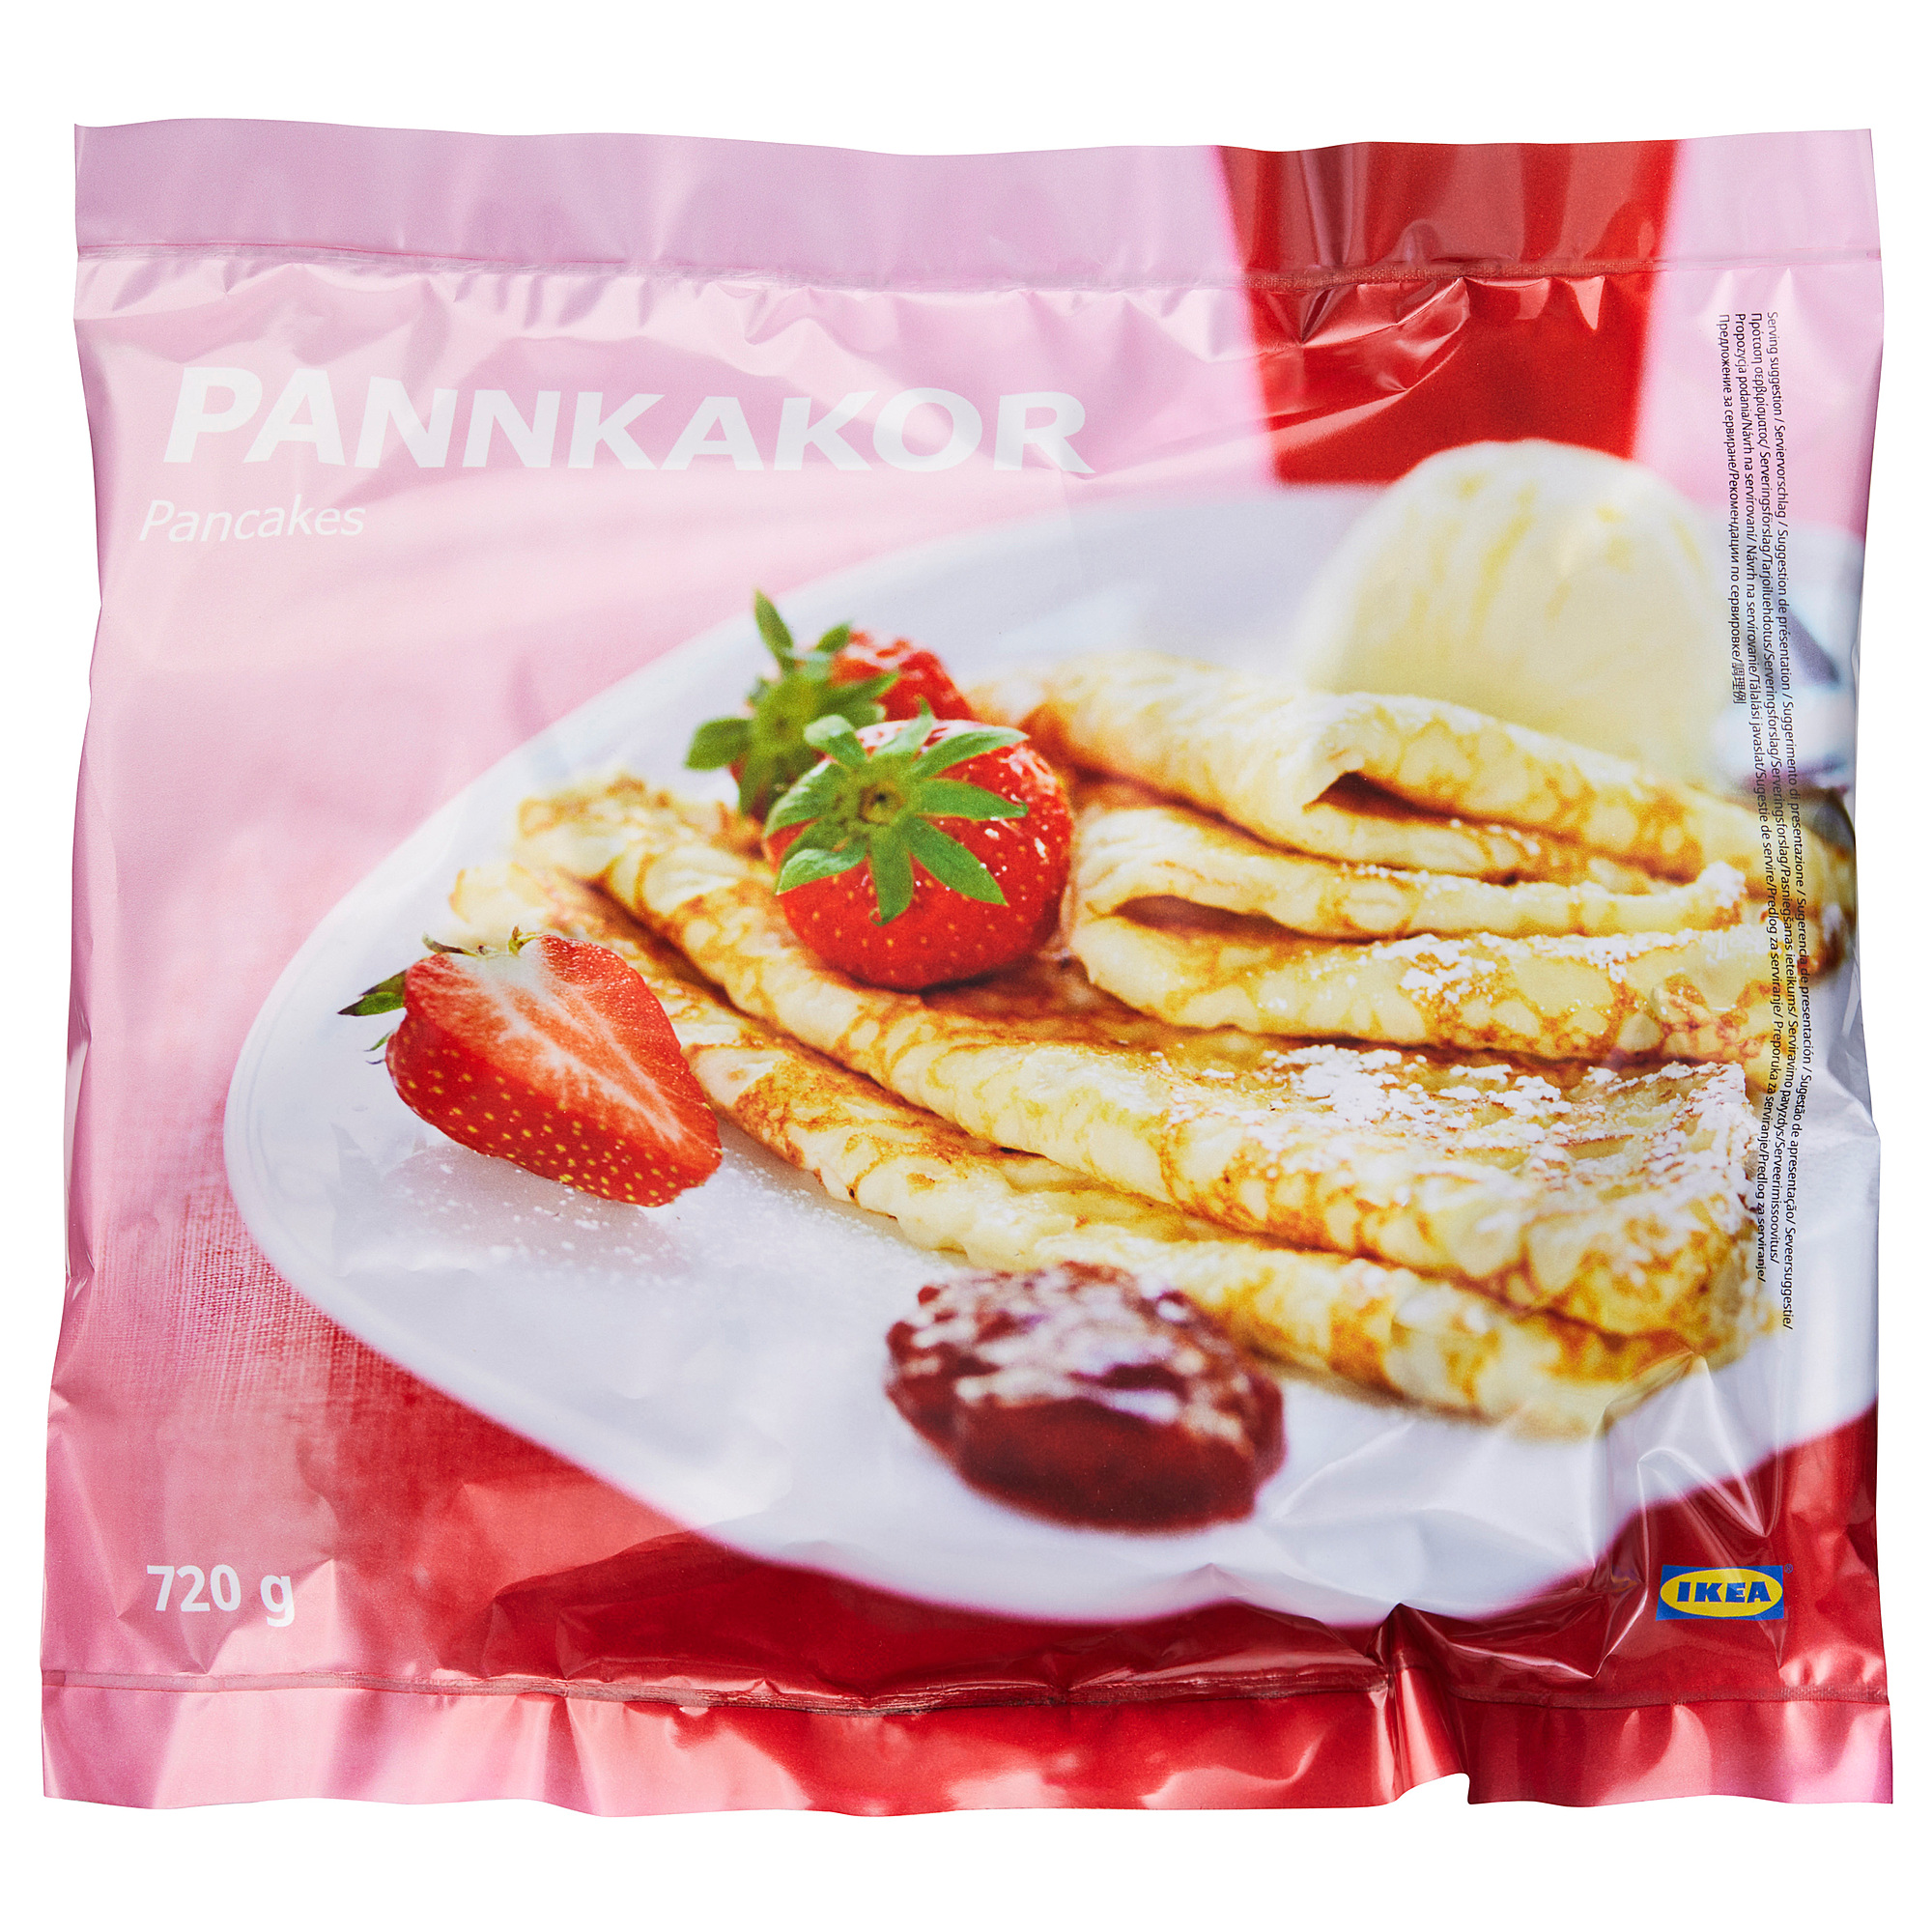 PANNKAKOR pancakes, frozen